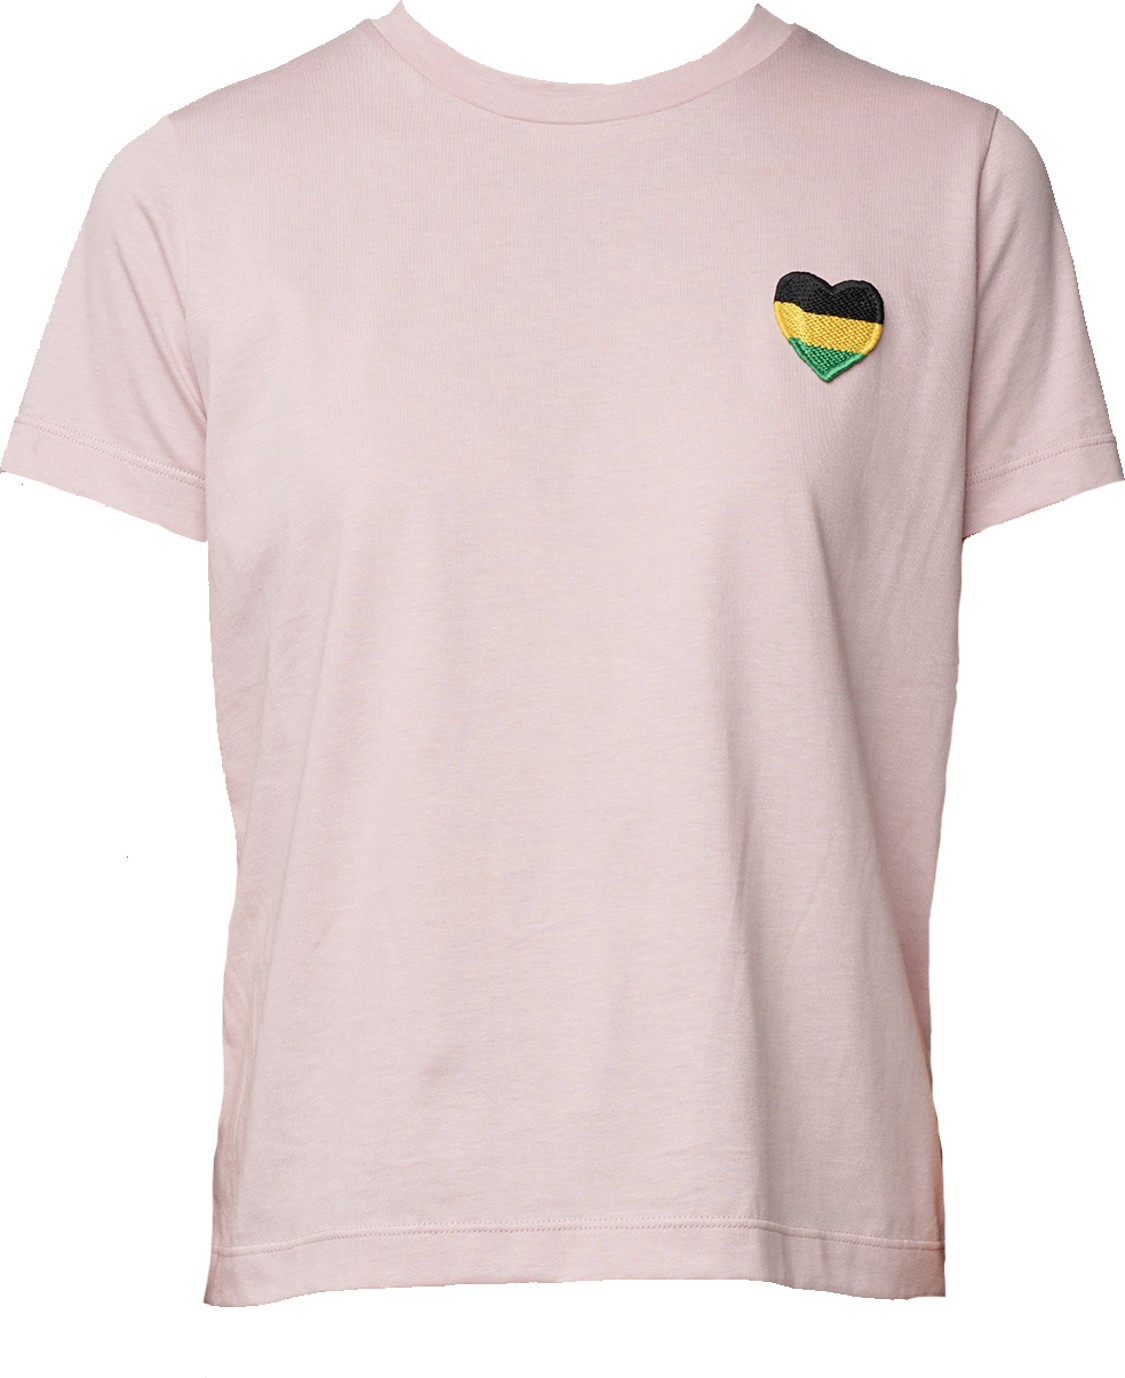 shop Department 5 Saldi T-shirts: T-shirts Department 5, fit regolare, manica corta, girocollo, rosa chiaro e cuore cucito a contrasto.

Composizione: 100% cotone. number 1779